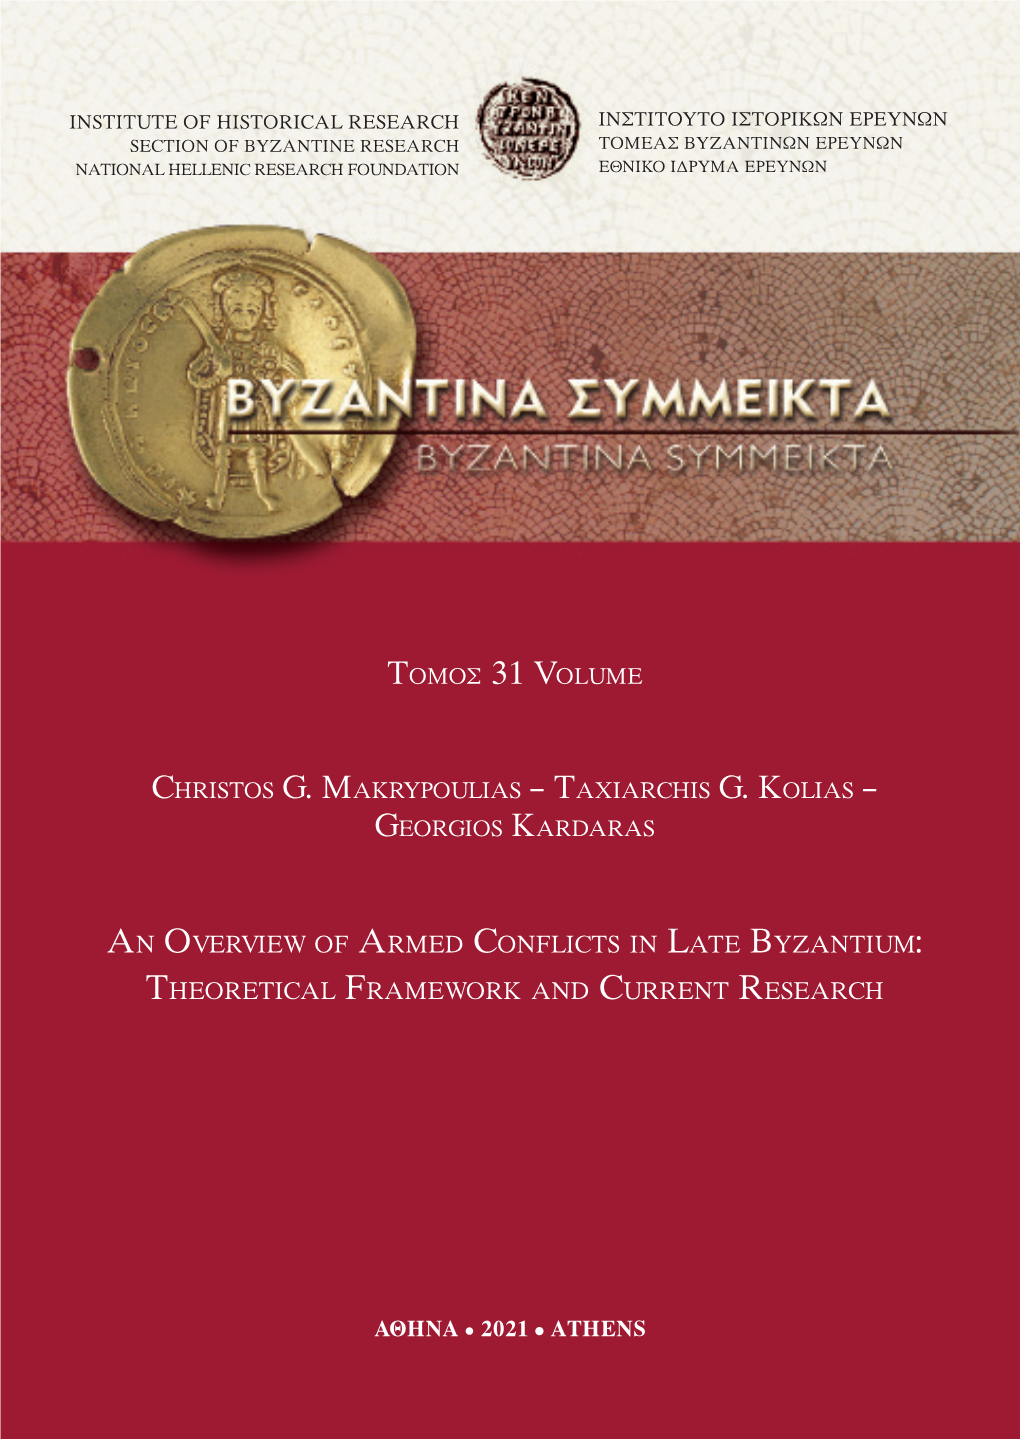 Byzantine Empire (Ca 600-1200): I.1